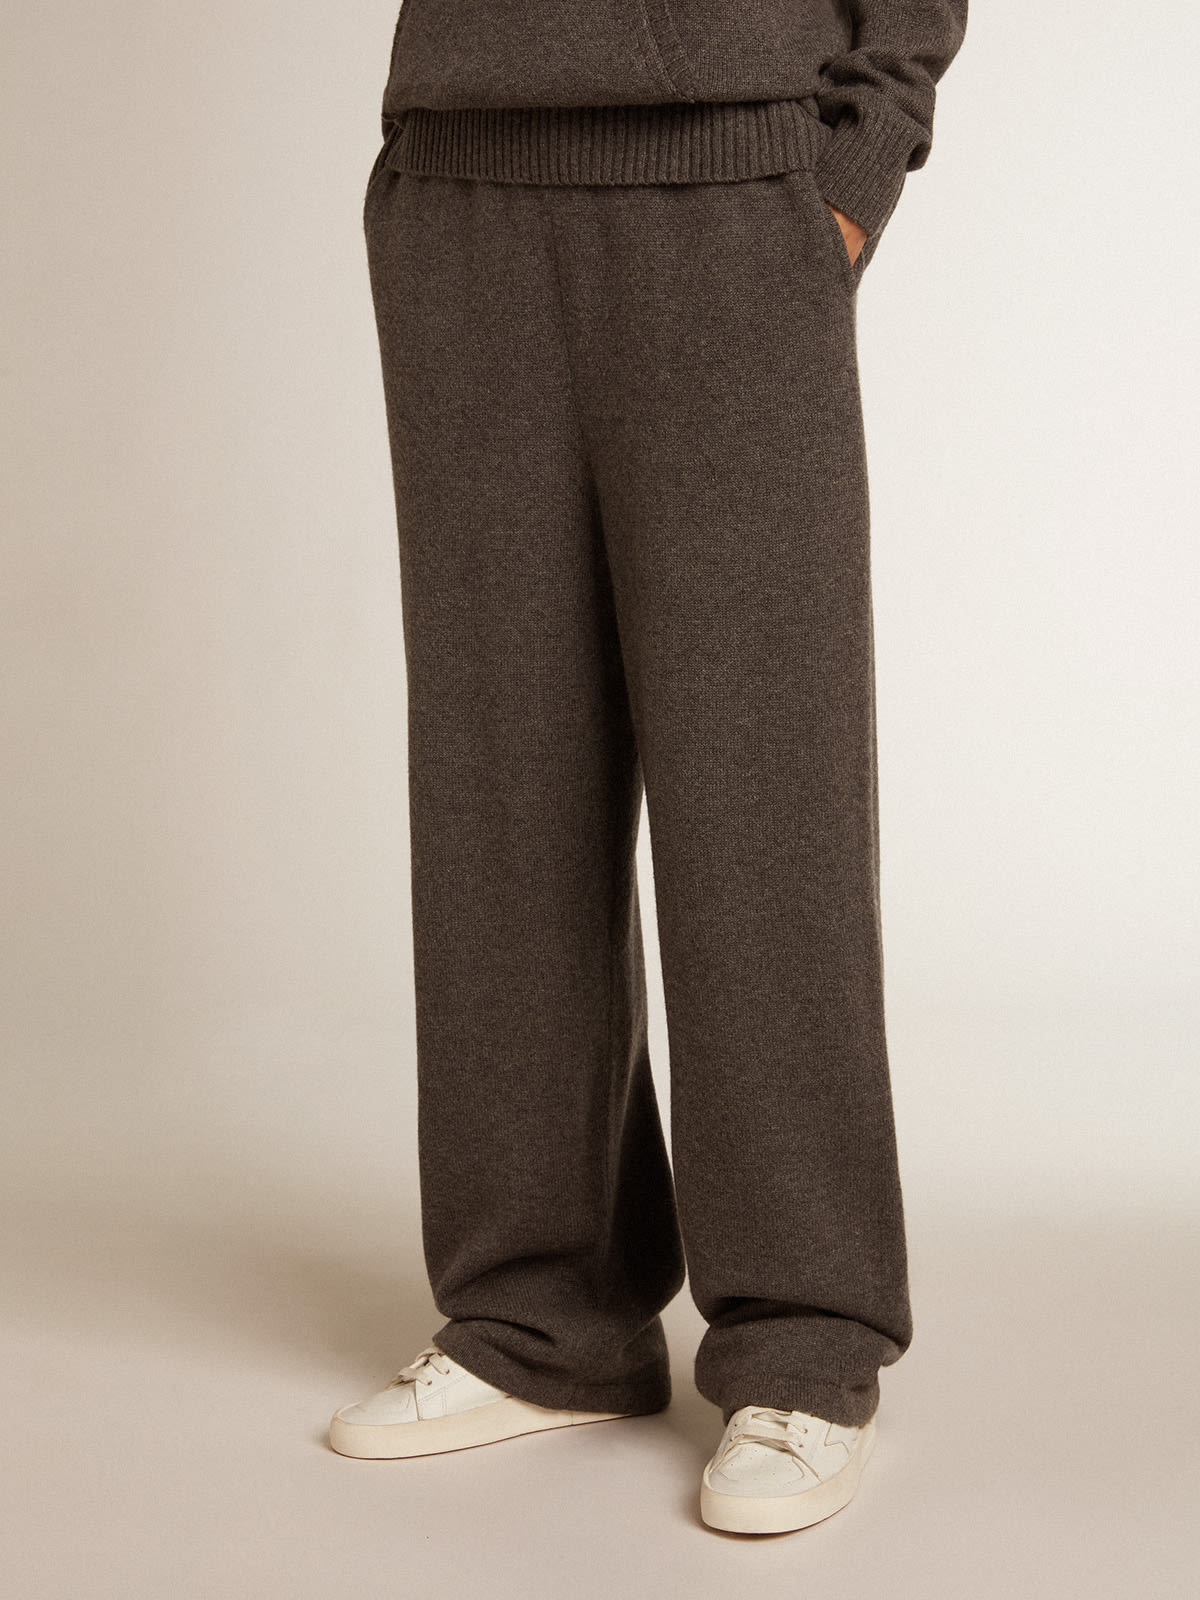 Golden Goose - Pantalone jogging donna misto cashmere di colore grigio  in 